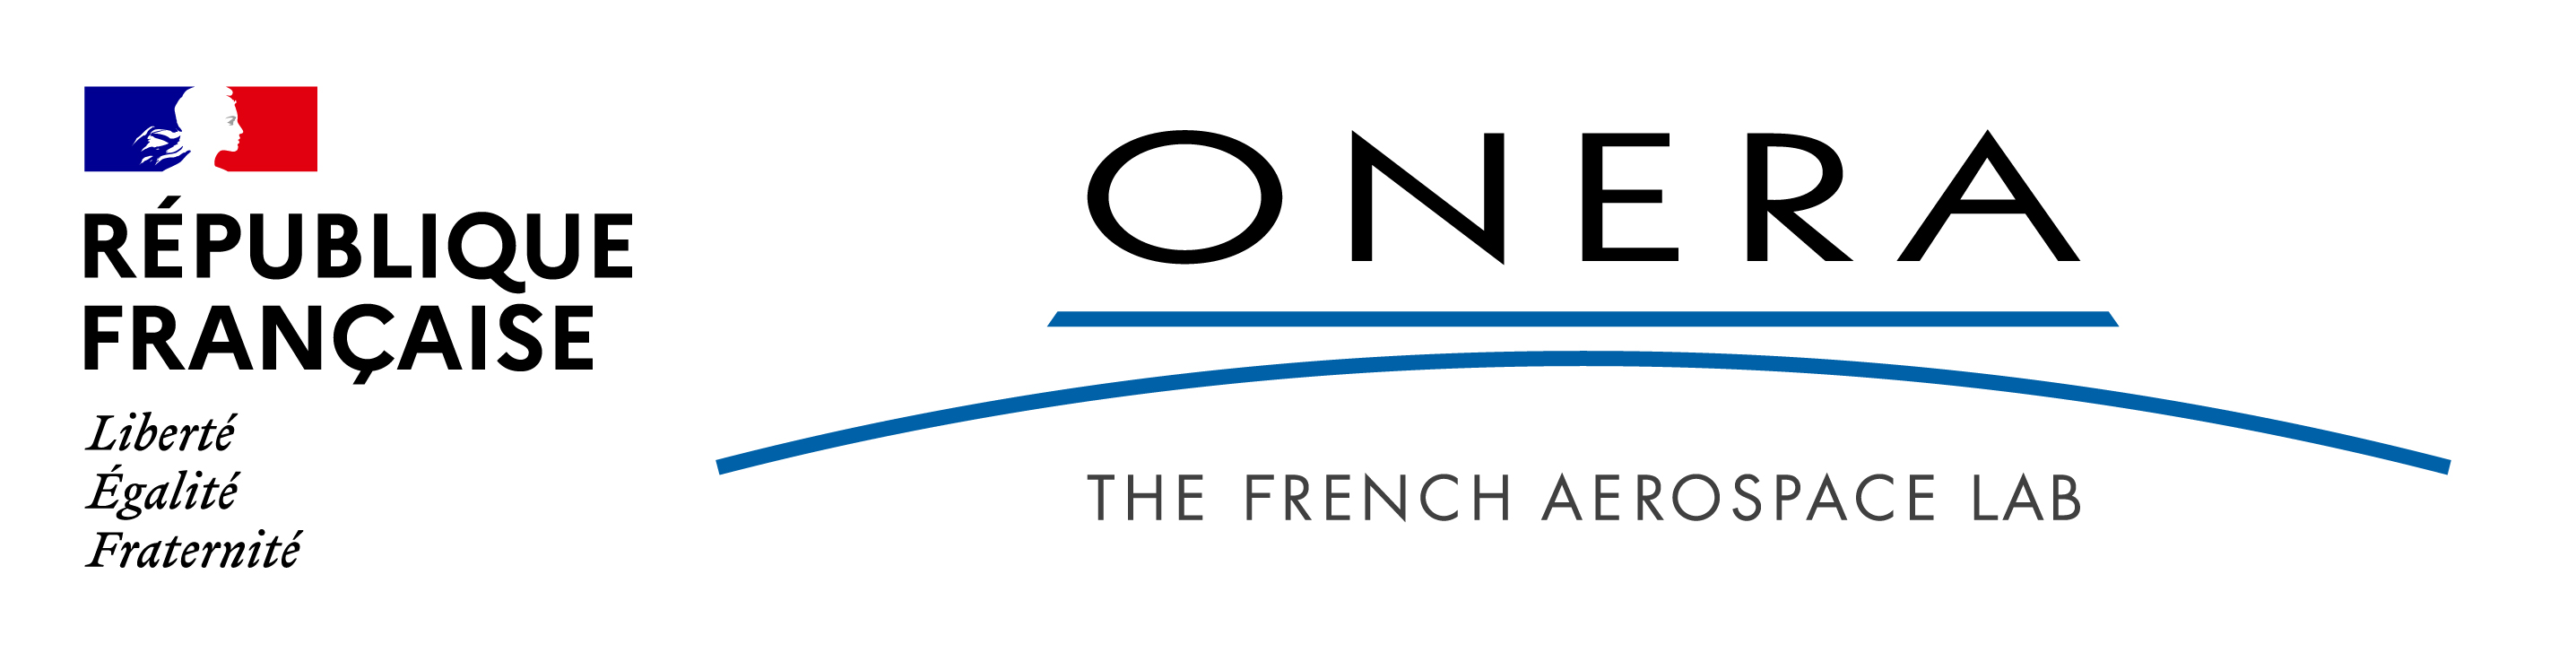 Logo_onera